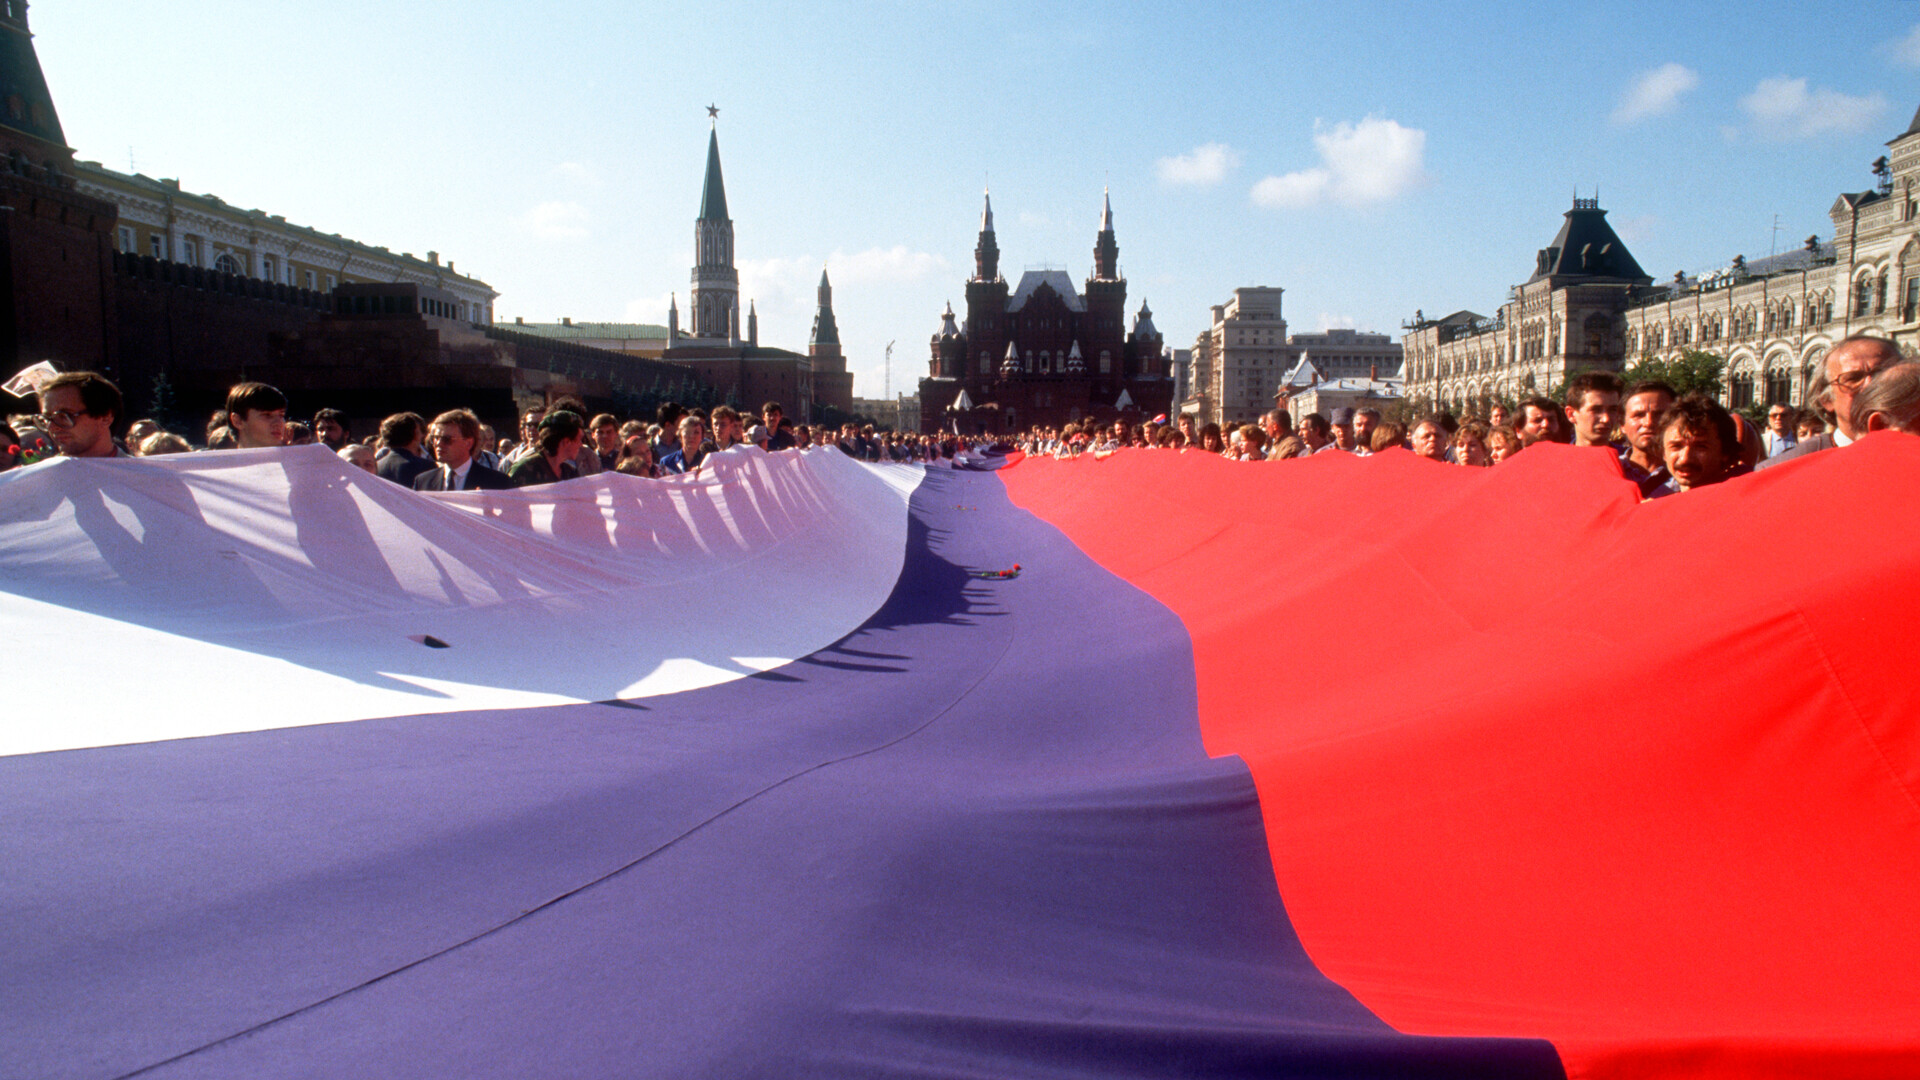 Demonstranti po neuspelem puču leta 1991 na Rdečem trgu izobesijo velikansko rusko zastavo. 18. avgusta 1991 so sovjetski privrženci trde linije poskušali spodnesti voditelja M. Gorbačova in predsednika B. Jelcina, vendar je puč s pomočjo množičnih javnih demonstracij le nekaj dni pozneje propadel.